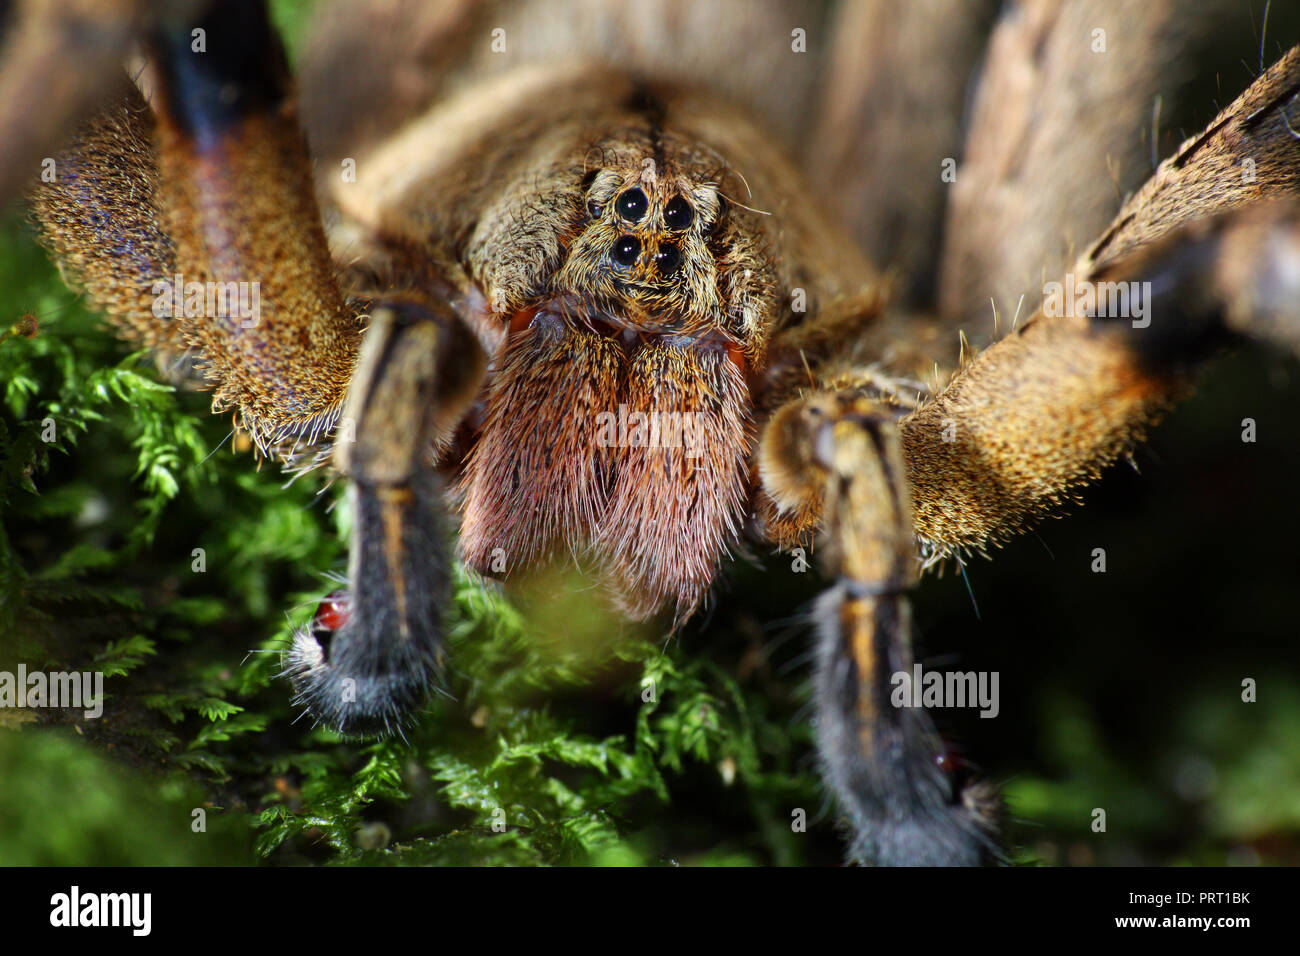 Homme errant brésilien (araignée Phoneutria aranha, armadeira) font face à l'araignée macro montrant les yeux, portrait détaillé. Araignée venimeuse du Brésil. Banque D'Images